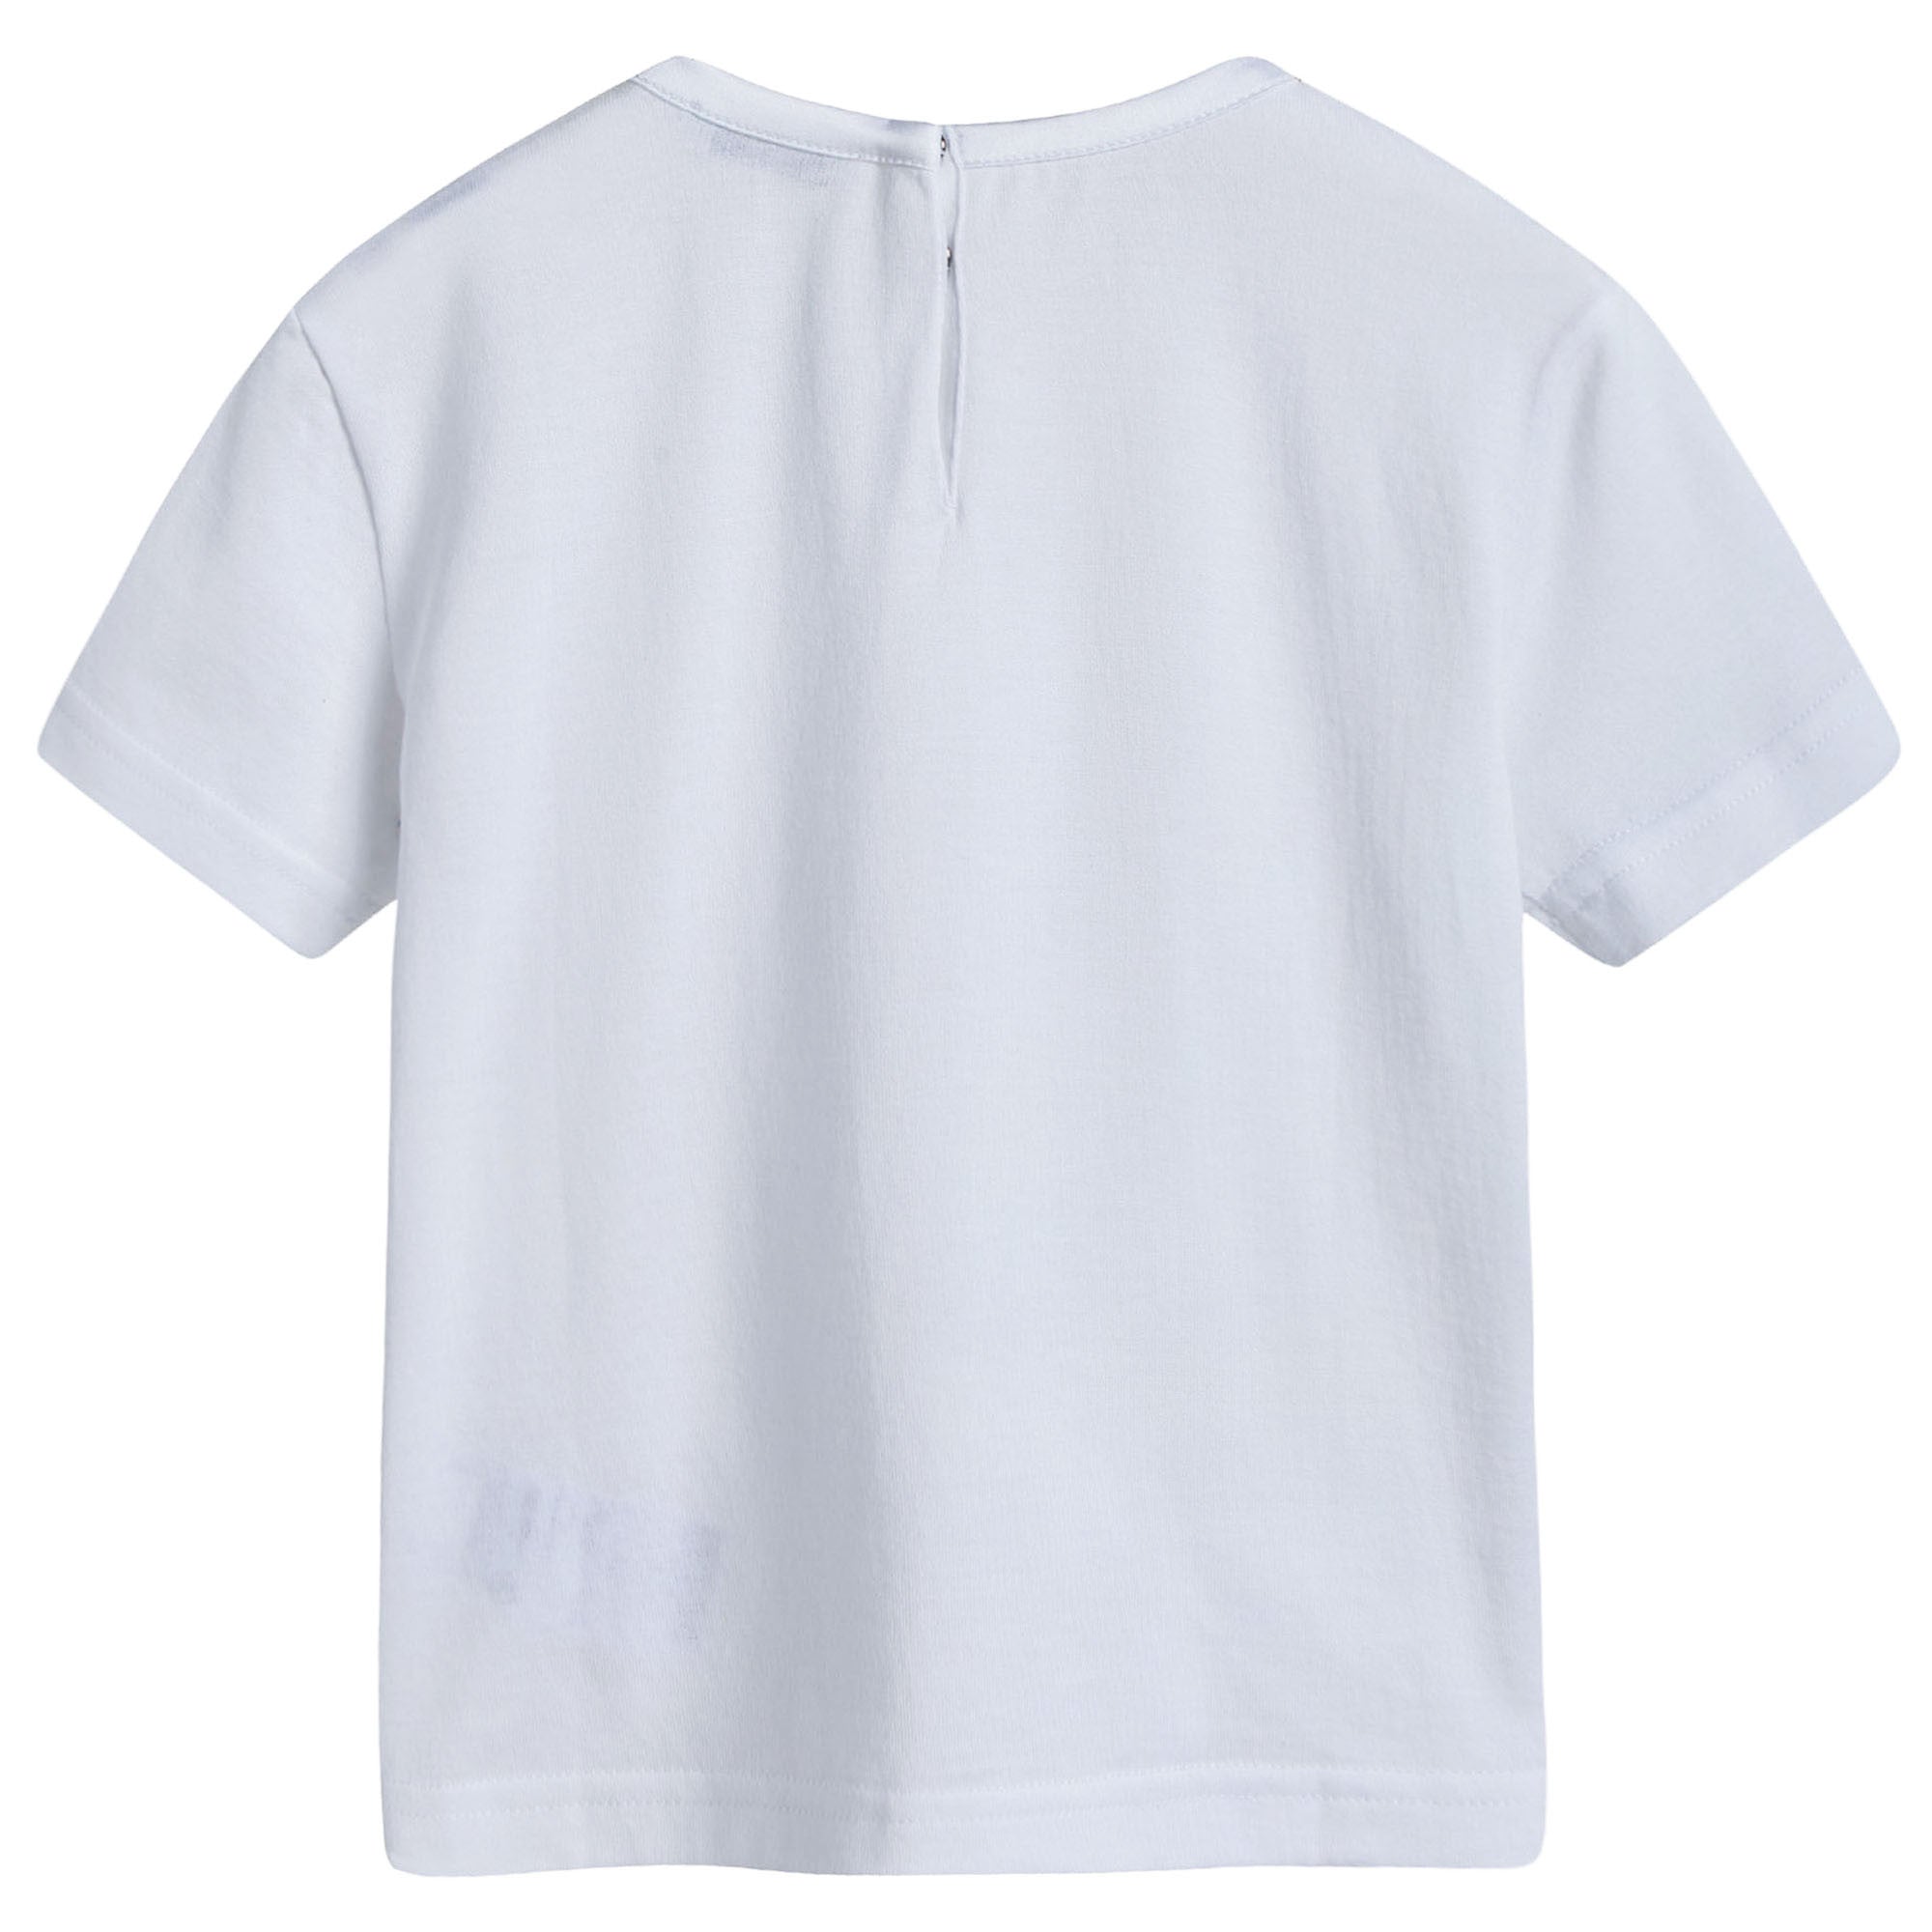 Girls Ivory Hem Lace Cotton T-Shirt